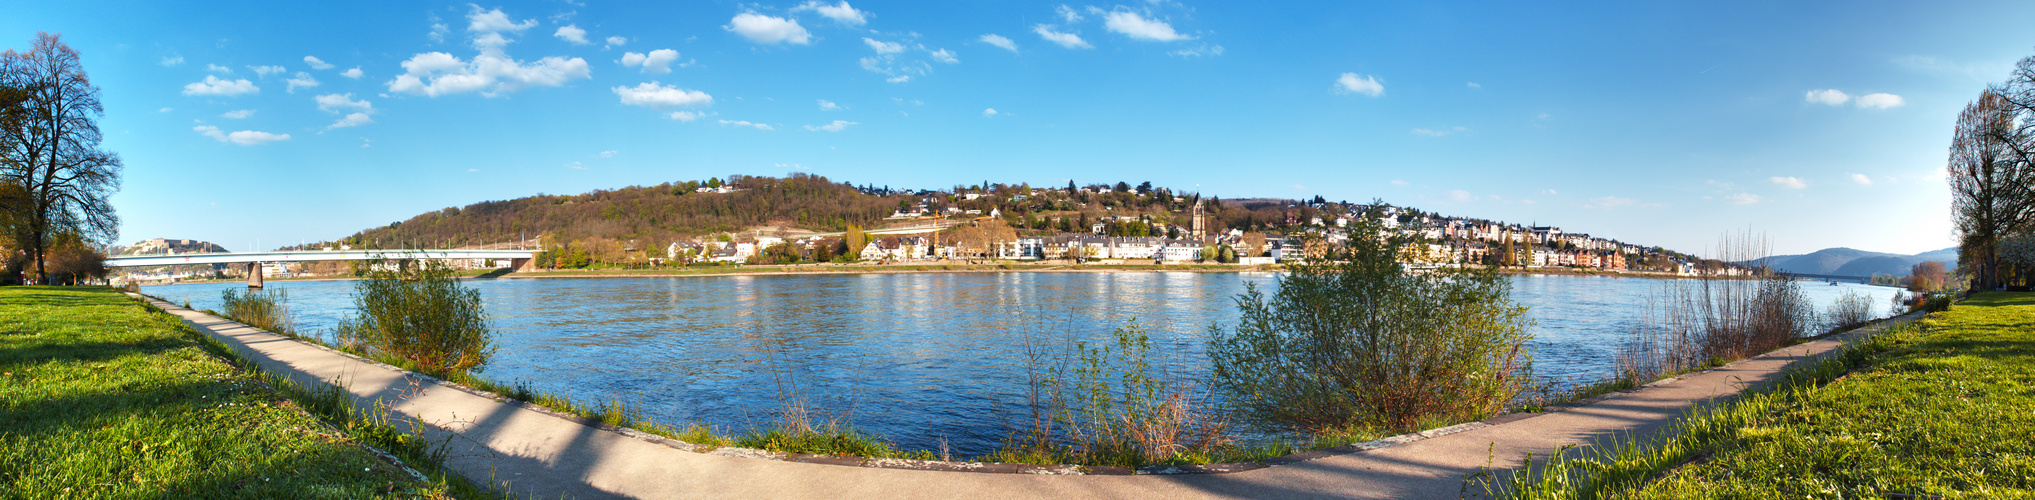 Panorama Koblenz Rheinanlagen